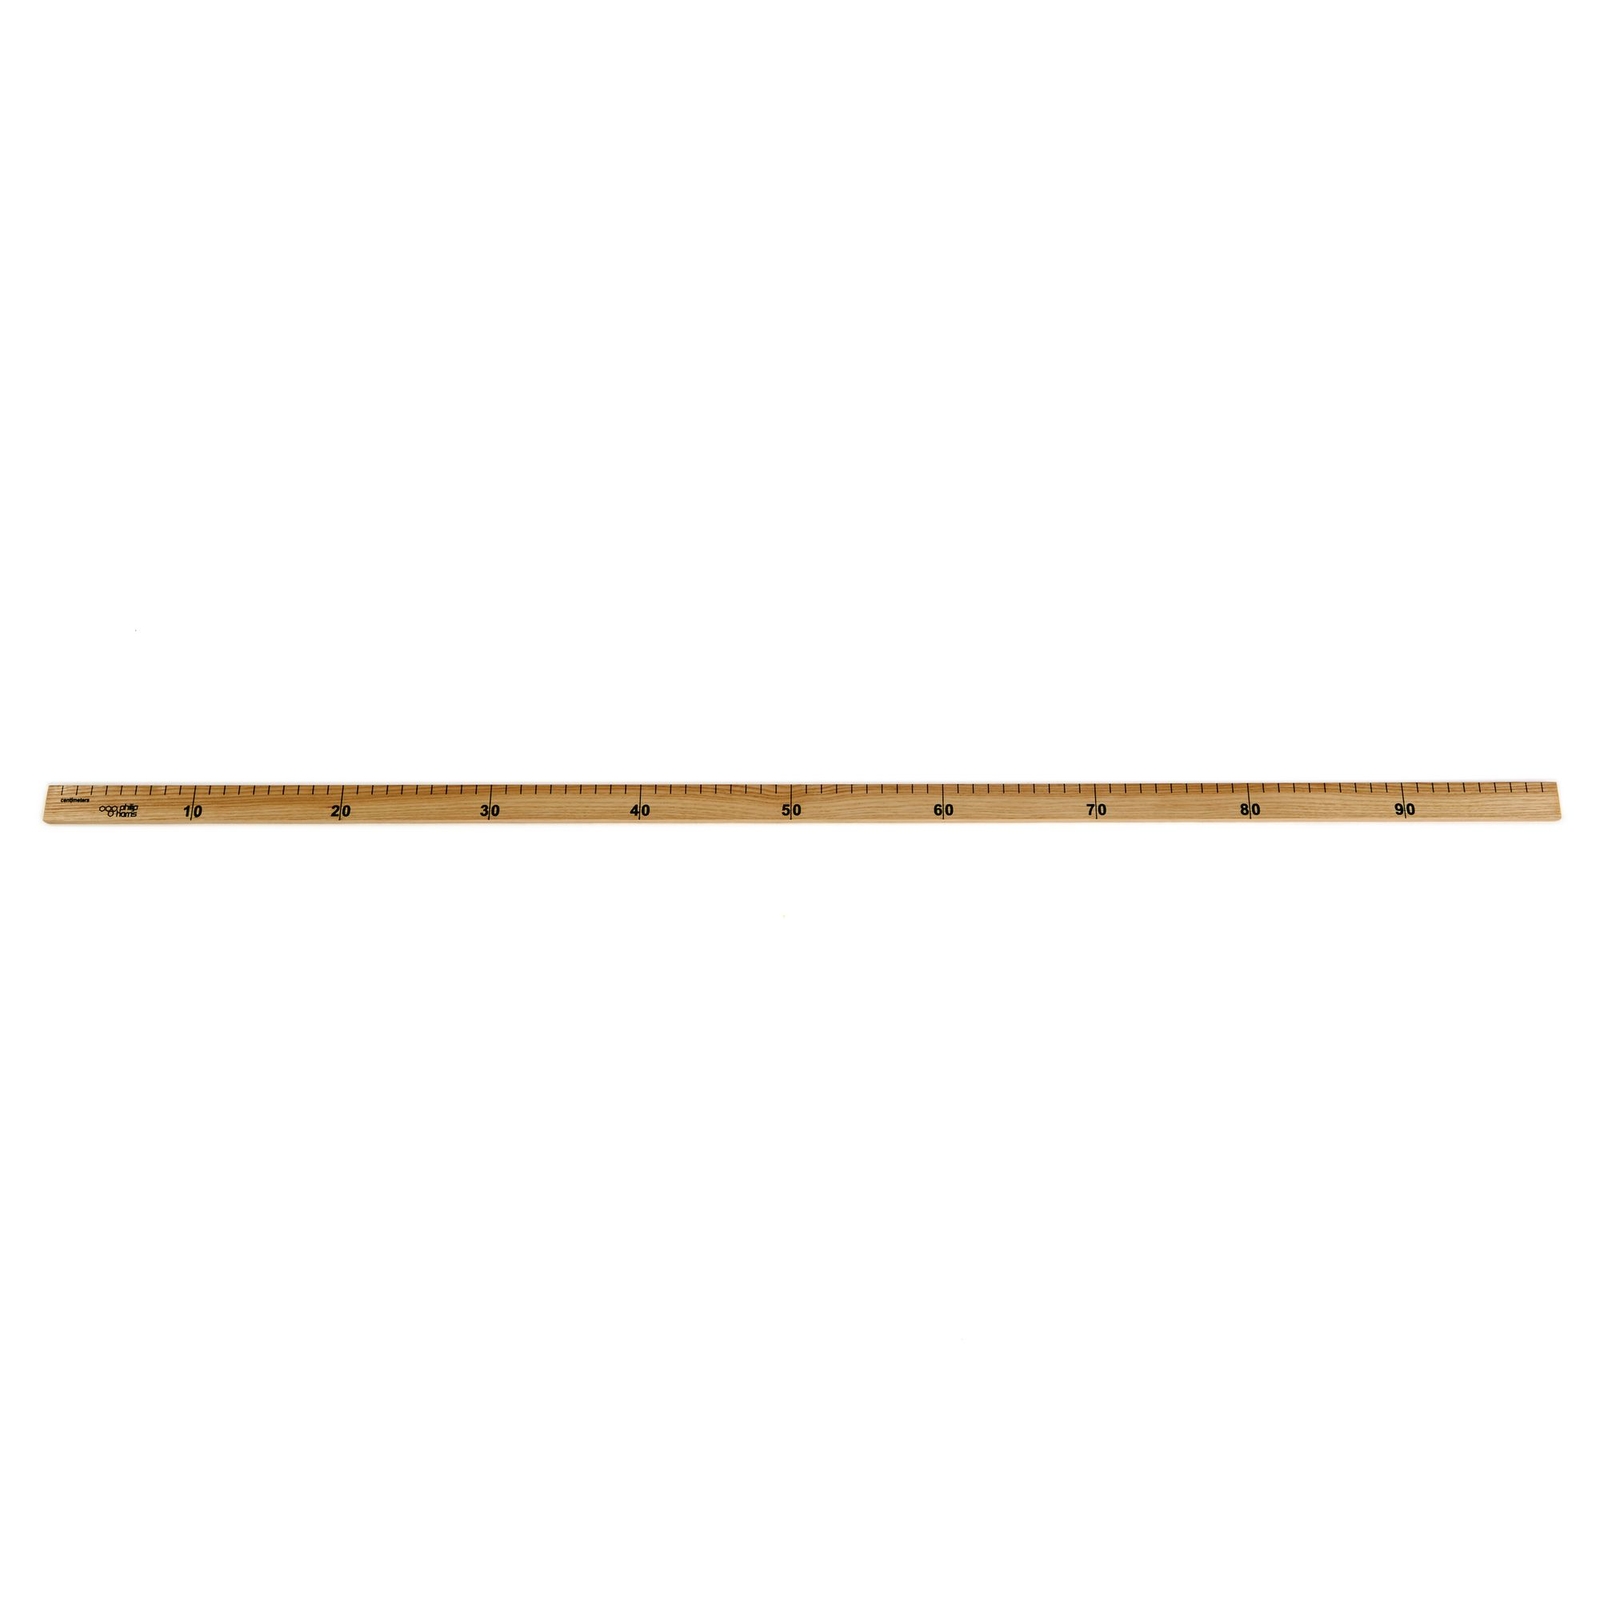 Hardwood Simple Metre Rule